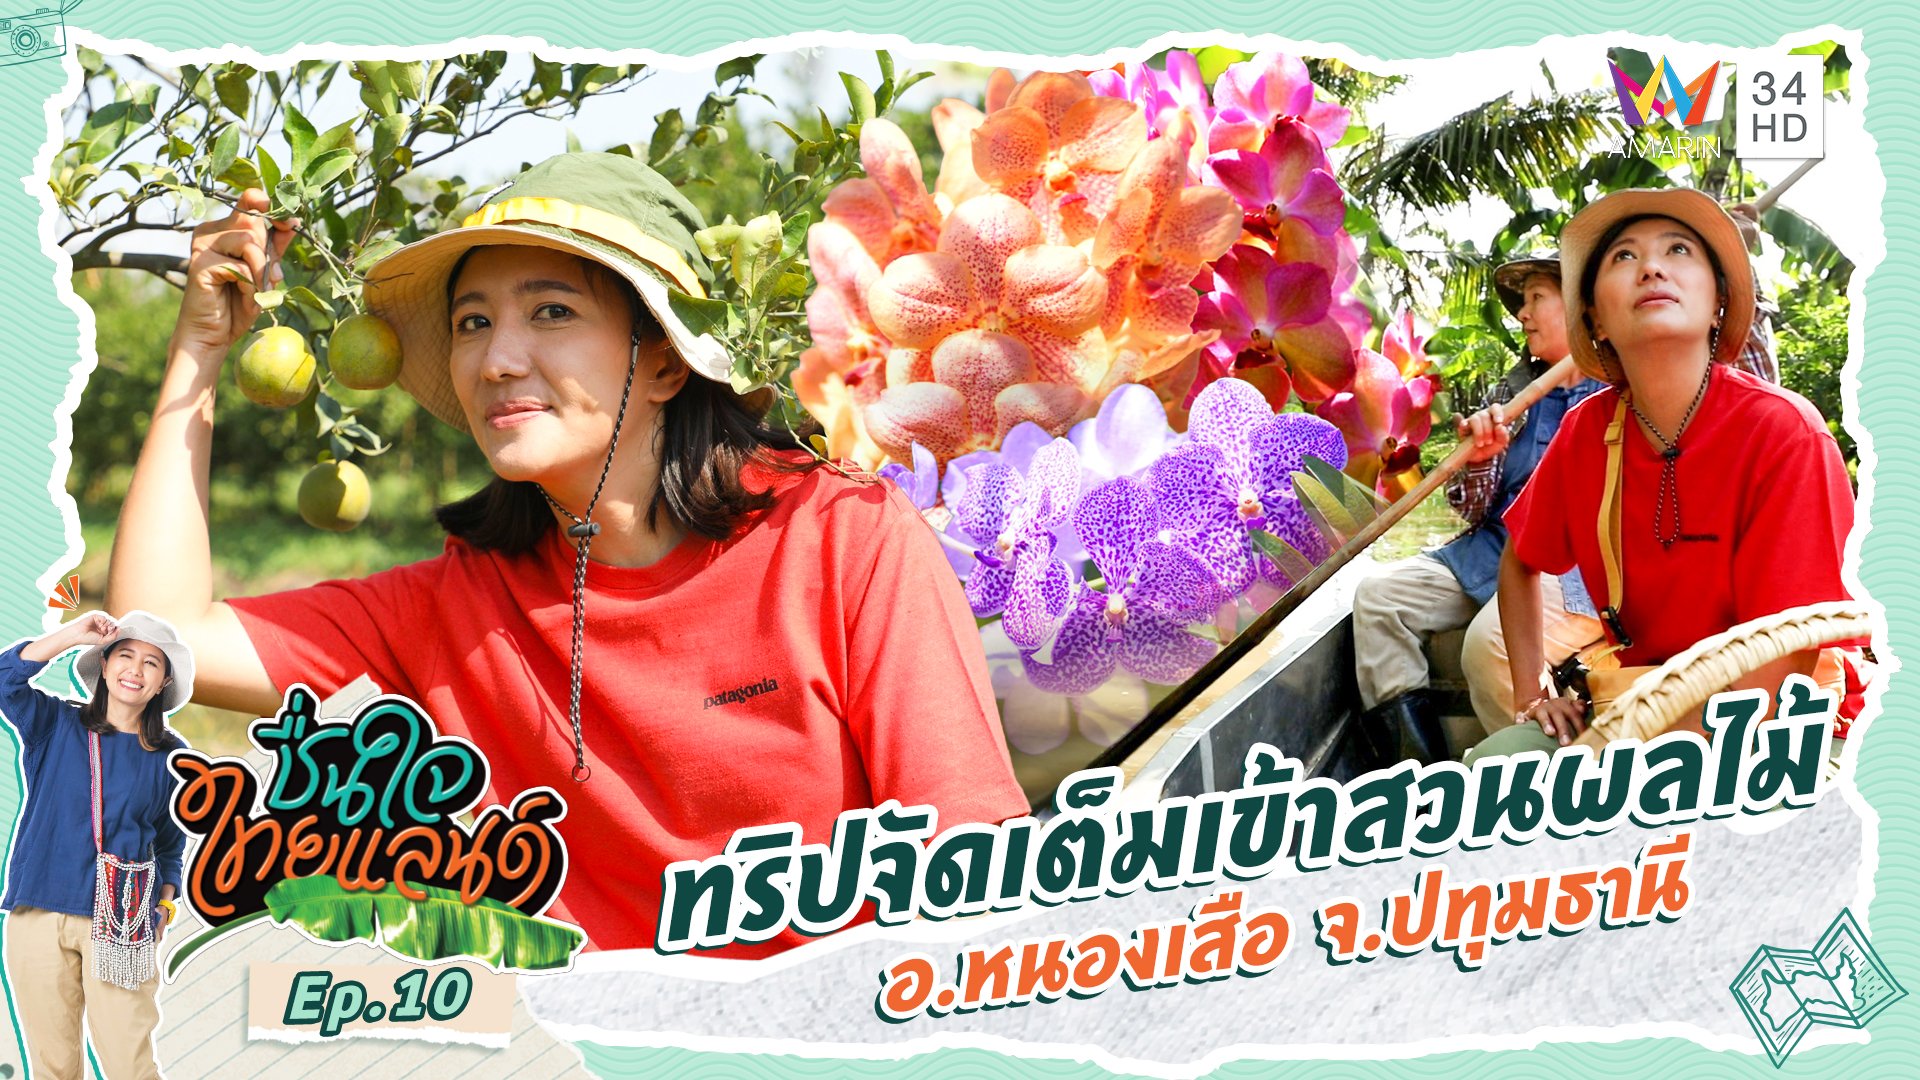 ชื่นใจไทยแลนด์ | EP.10 ทริปจัดเต็มเข้าสวนผลไม้ อ.หนองเสือ จ.ปทุมธานี | 6 ม.ค. 67 | AMARIN TVHD34